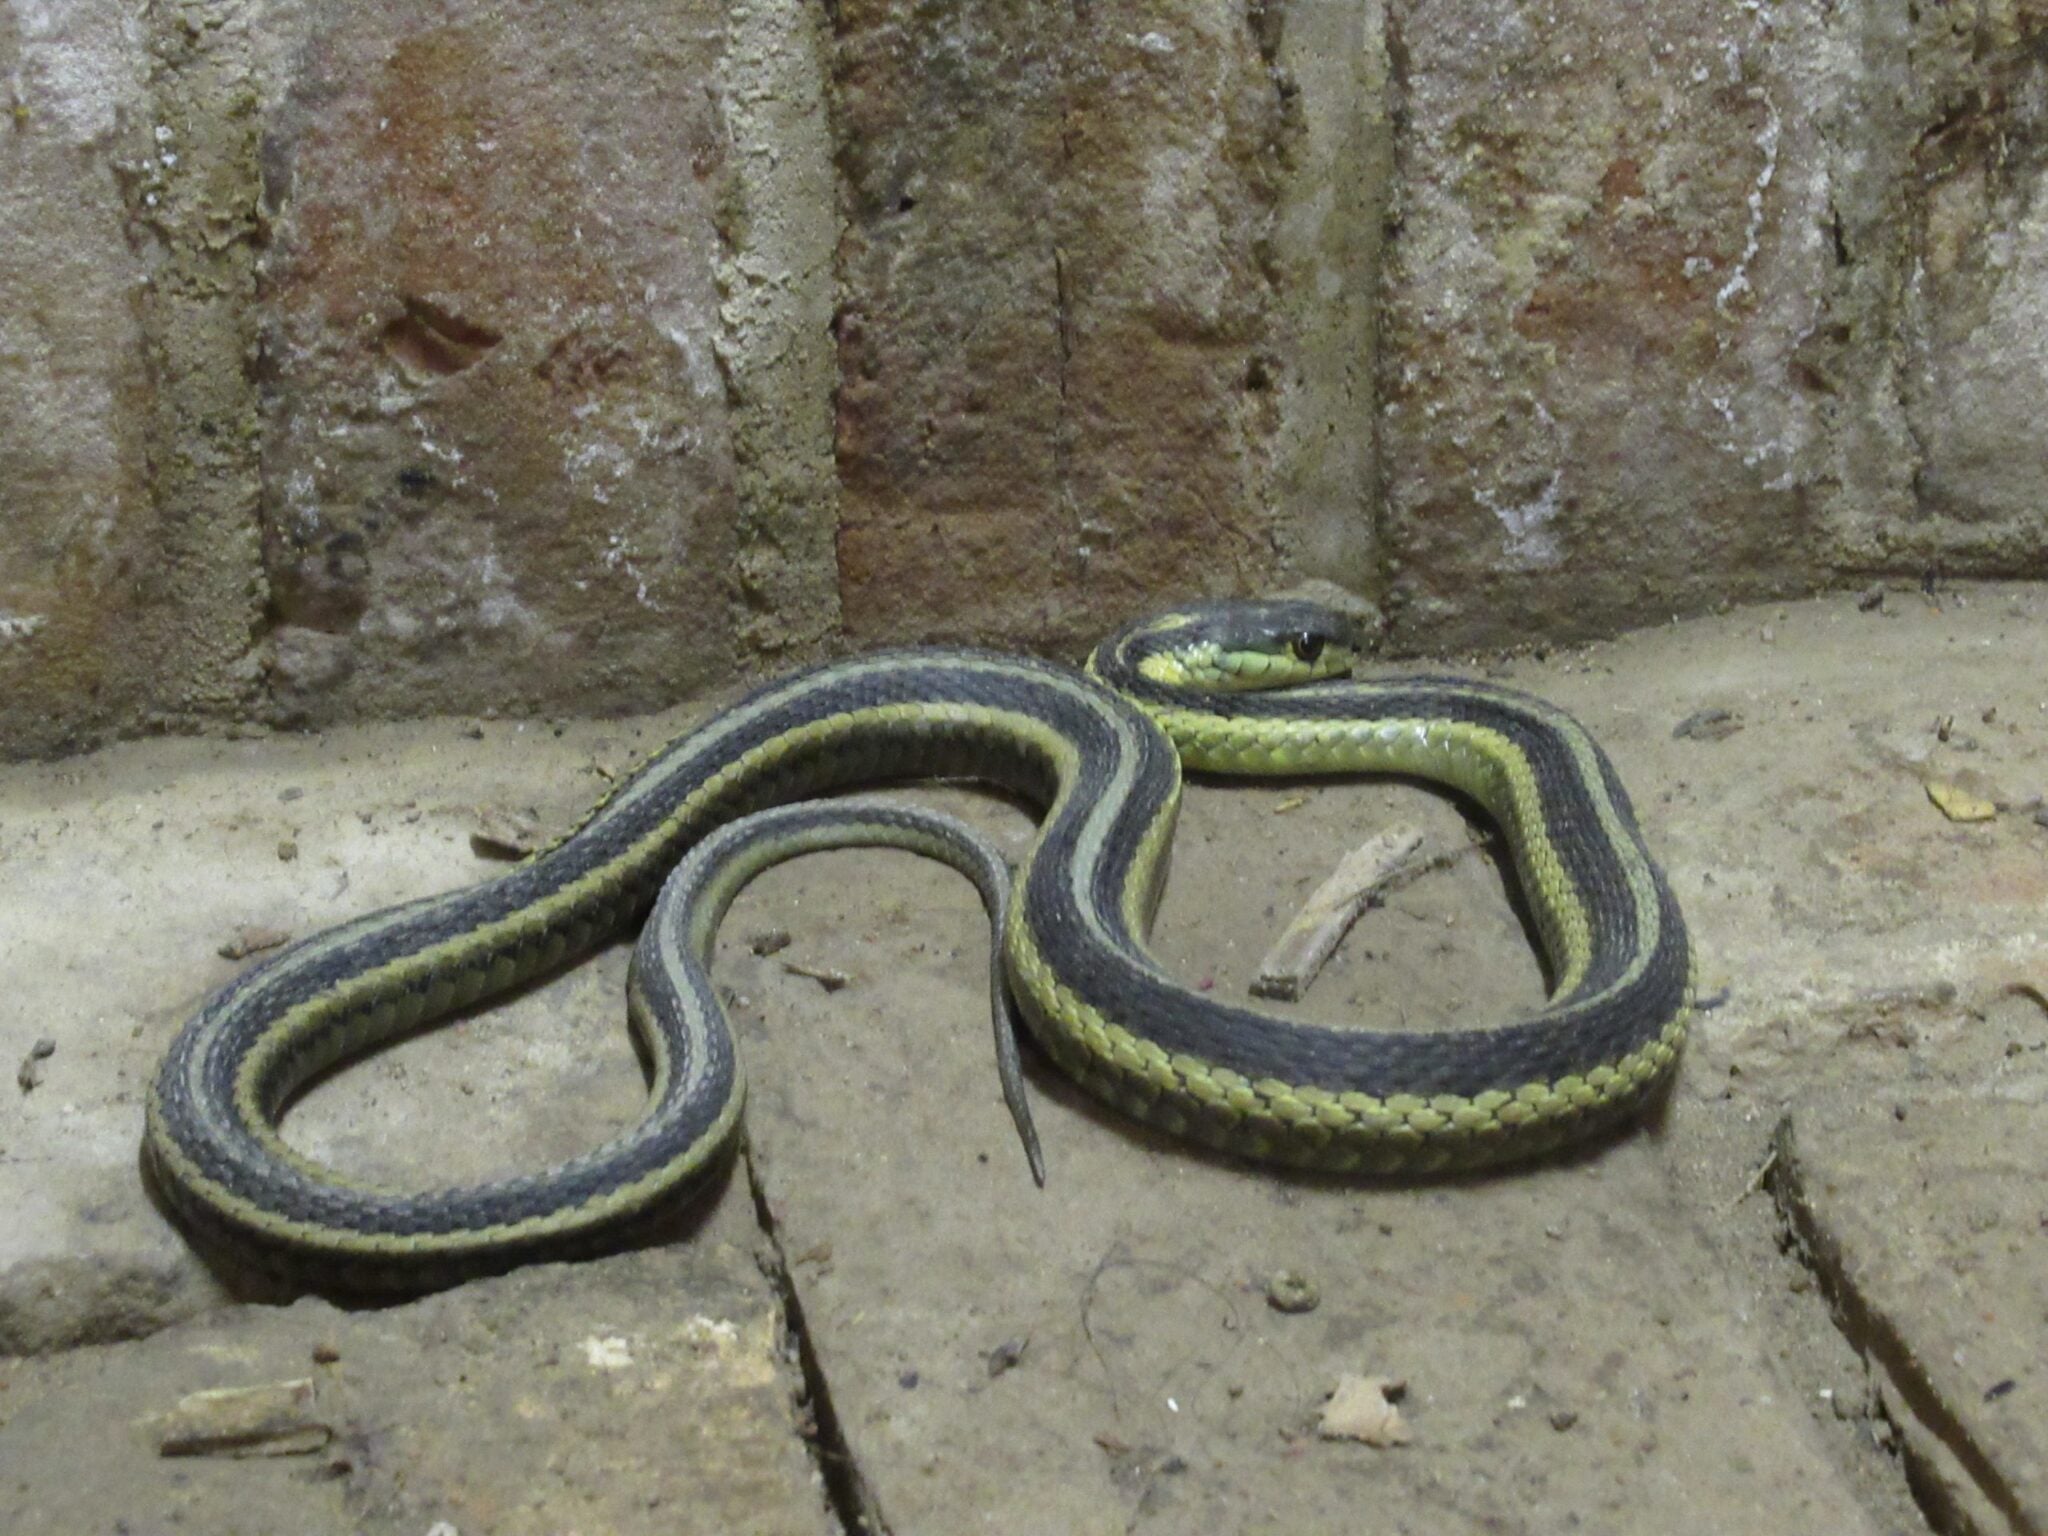 A garter snake on the stone floor of Brubacher House